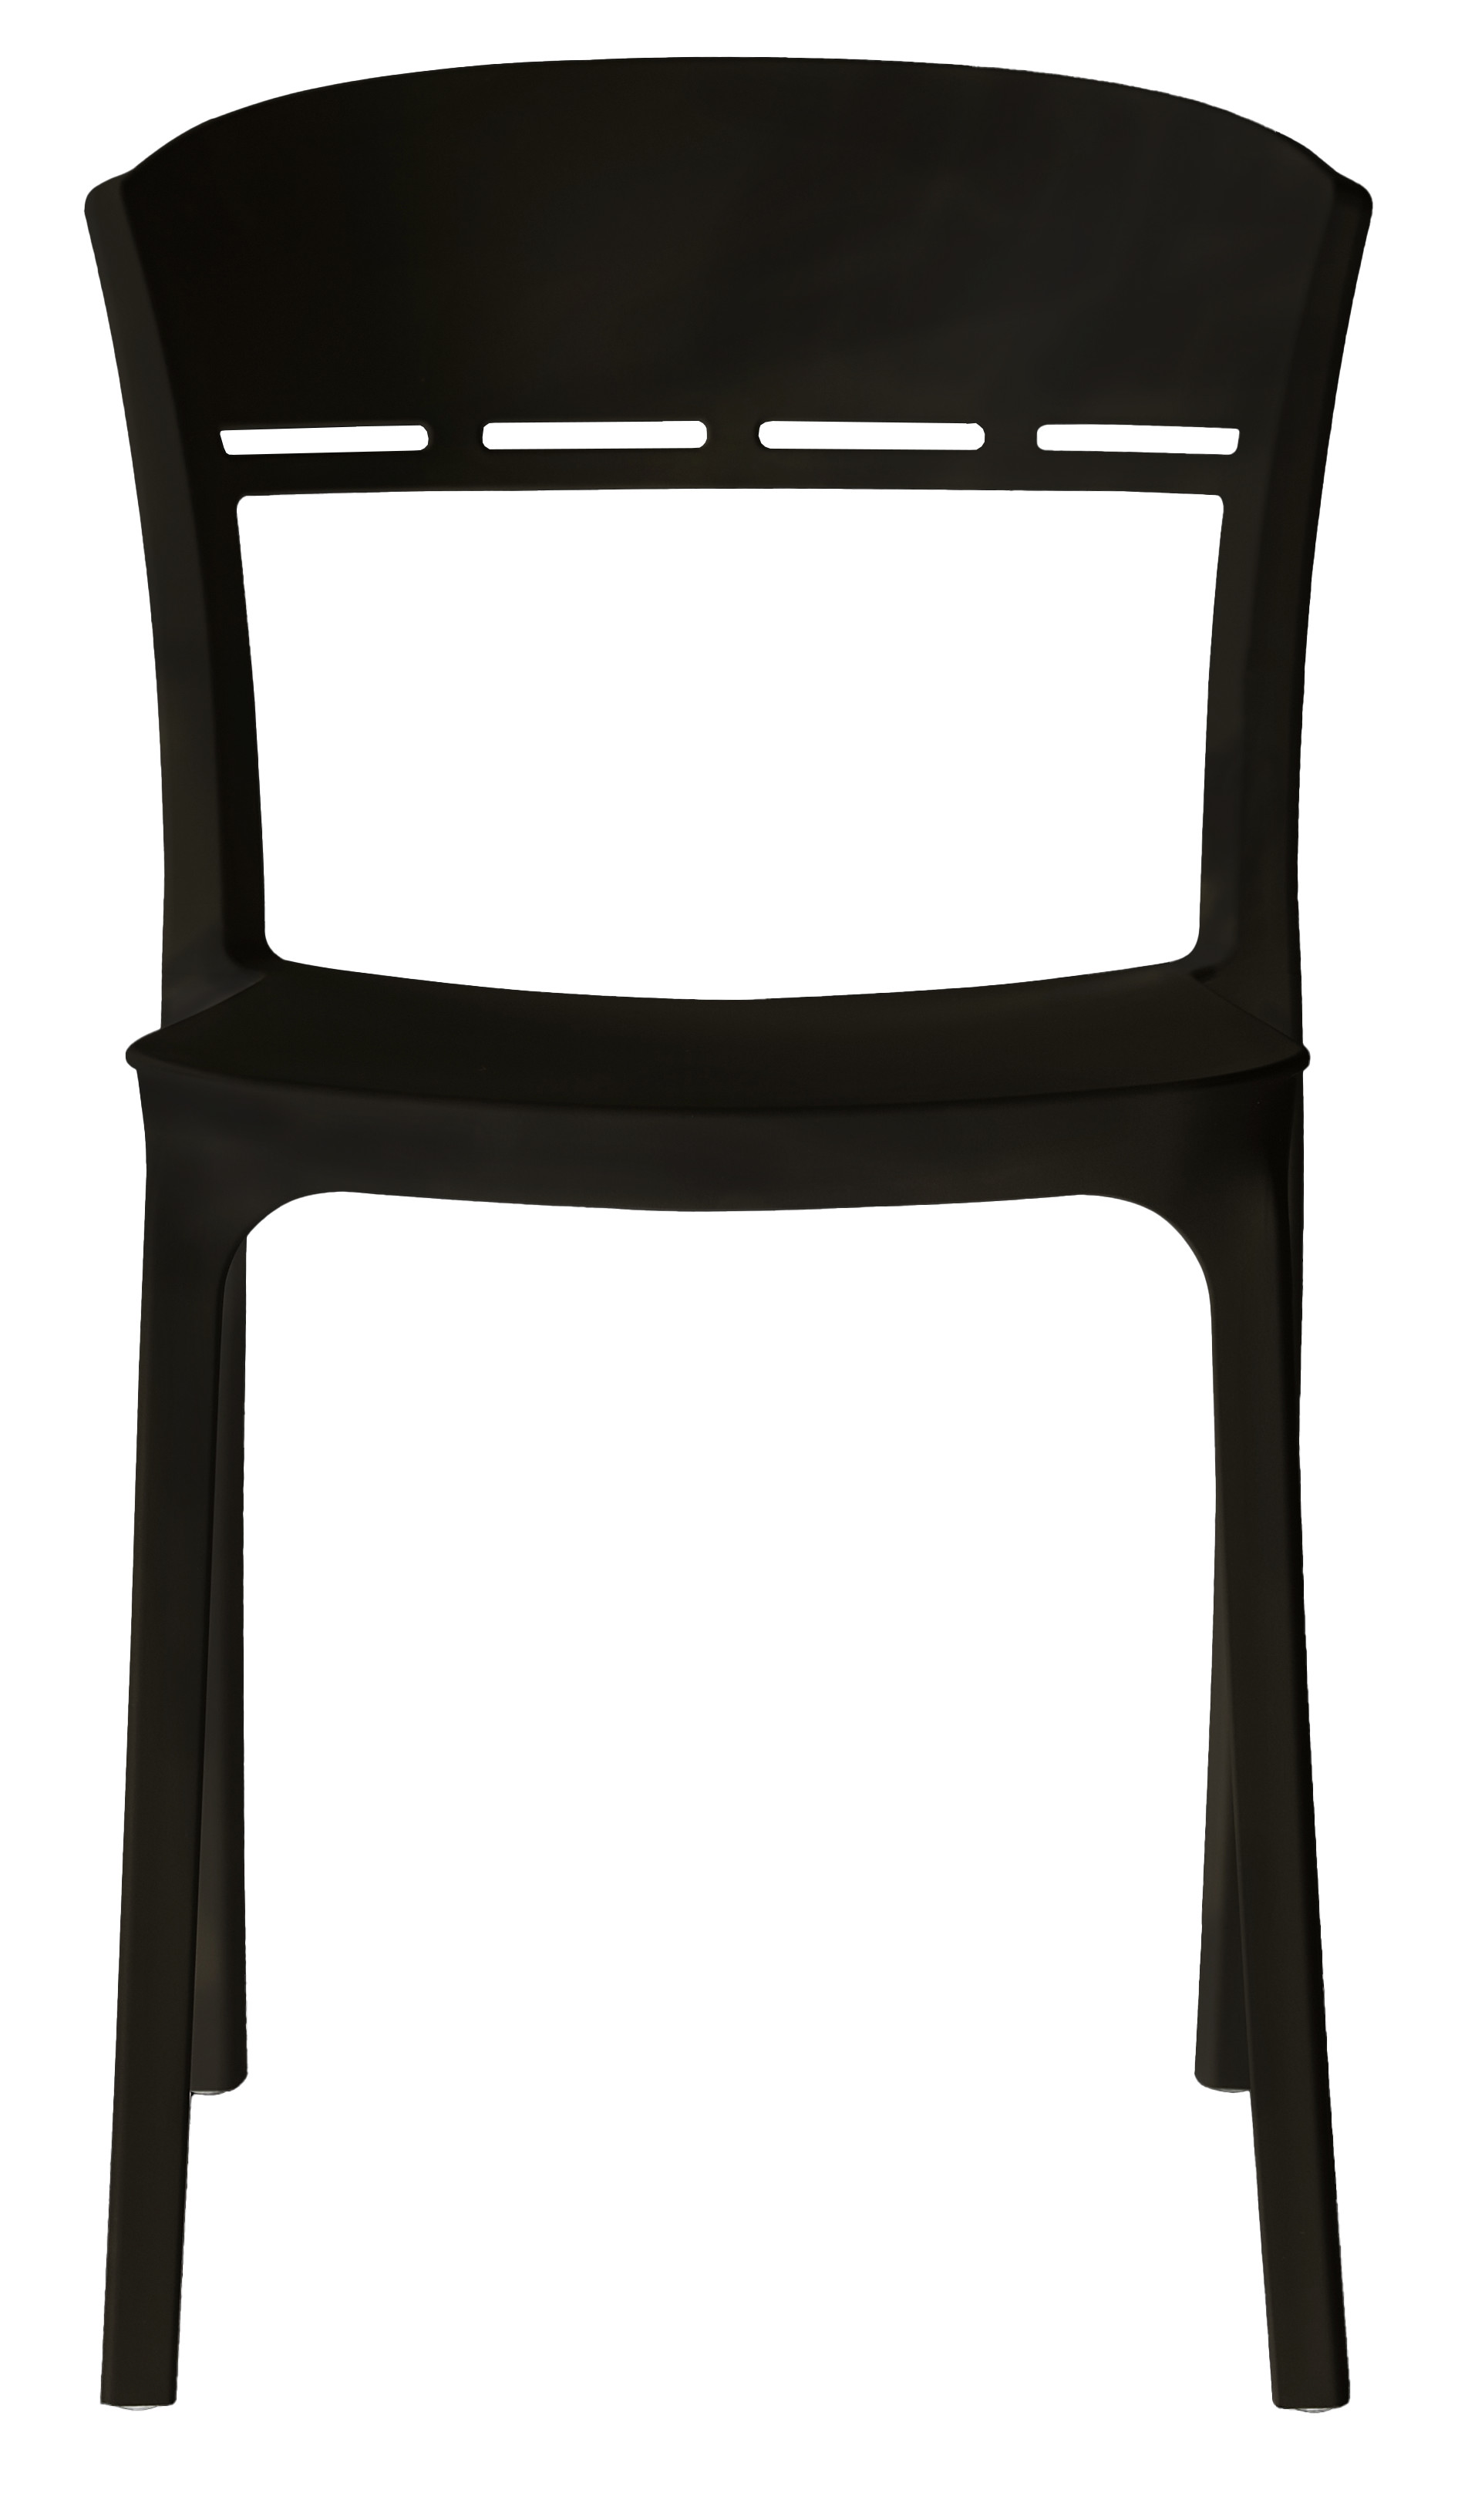 Židle COCO černá